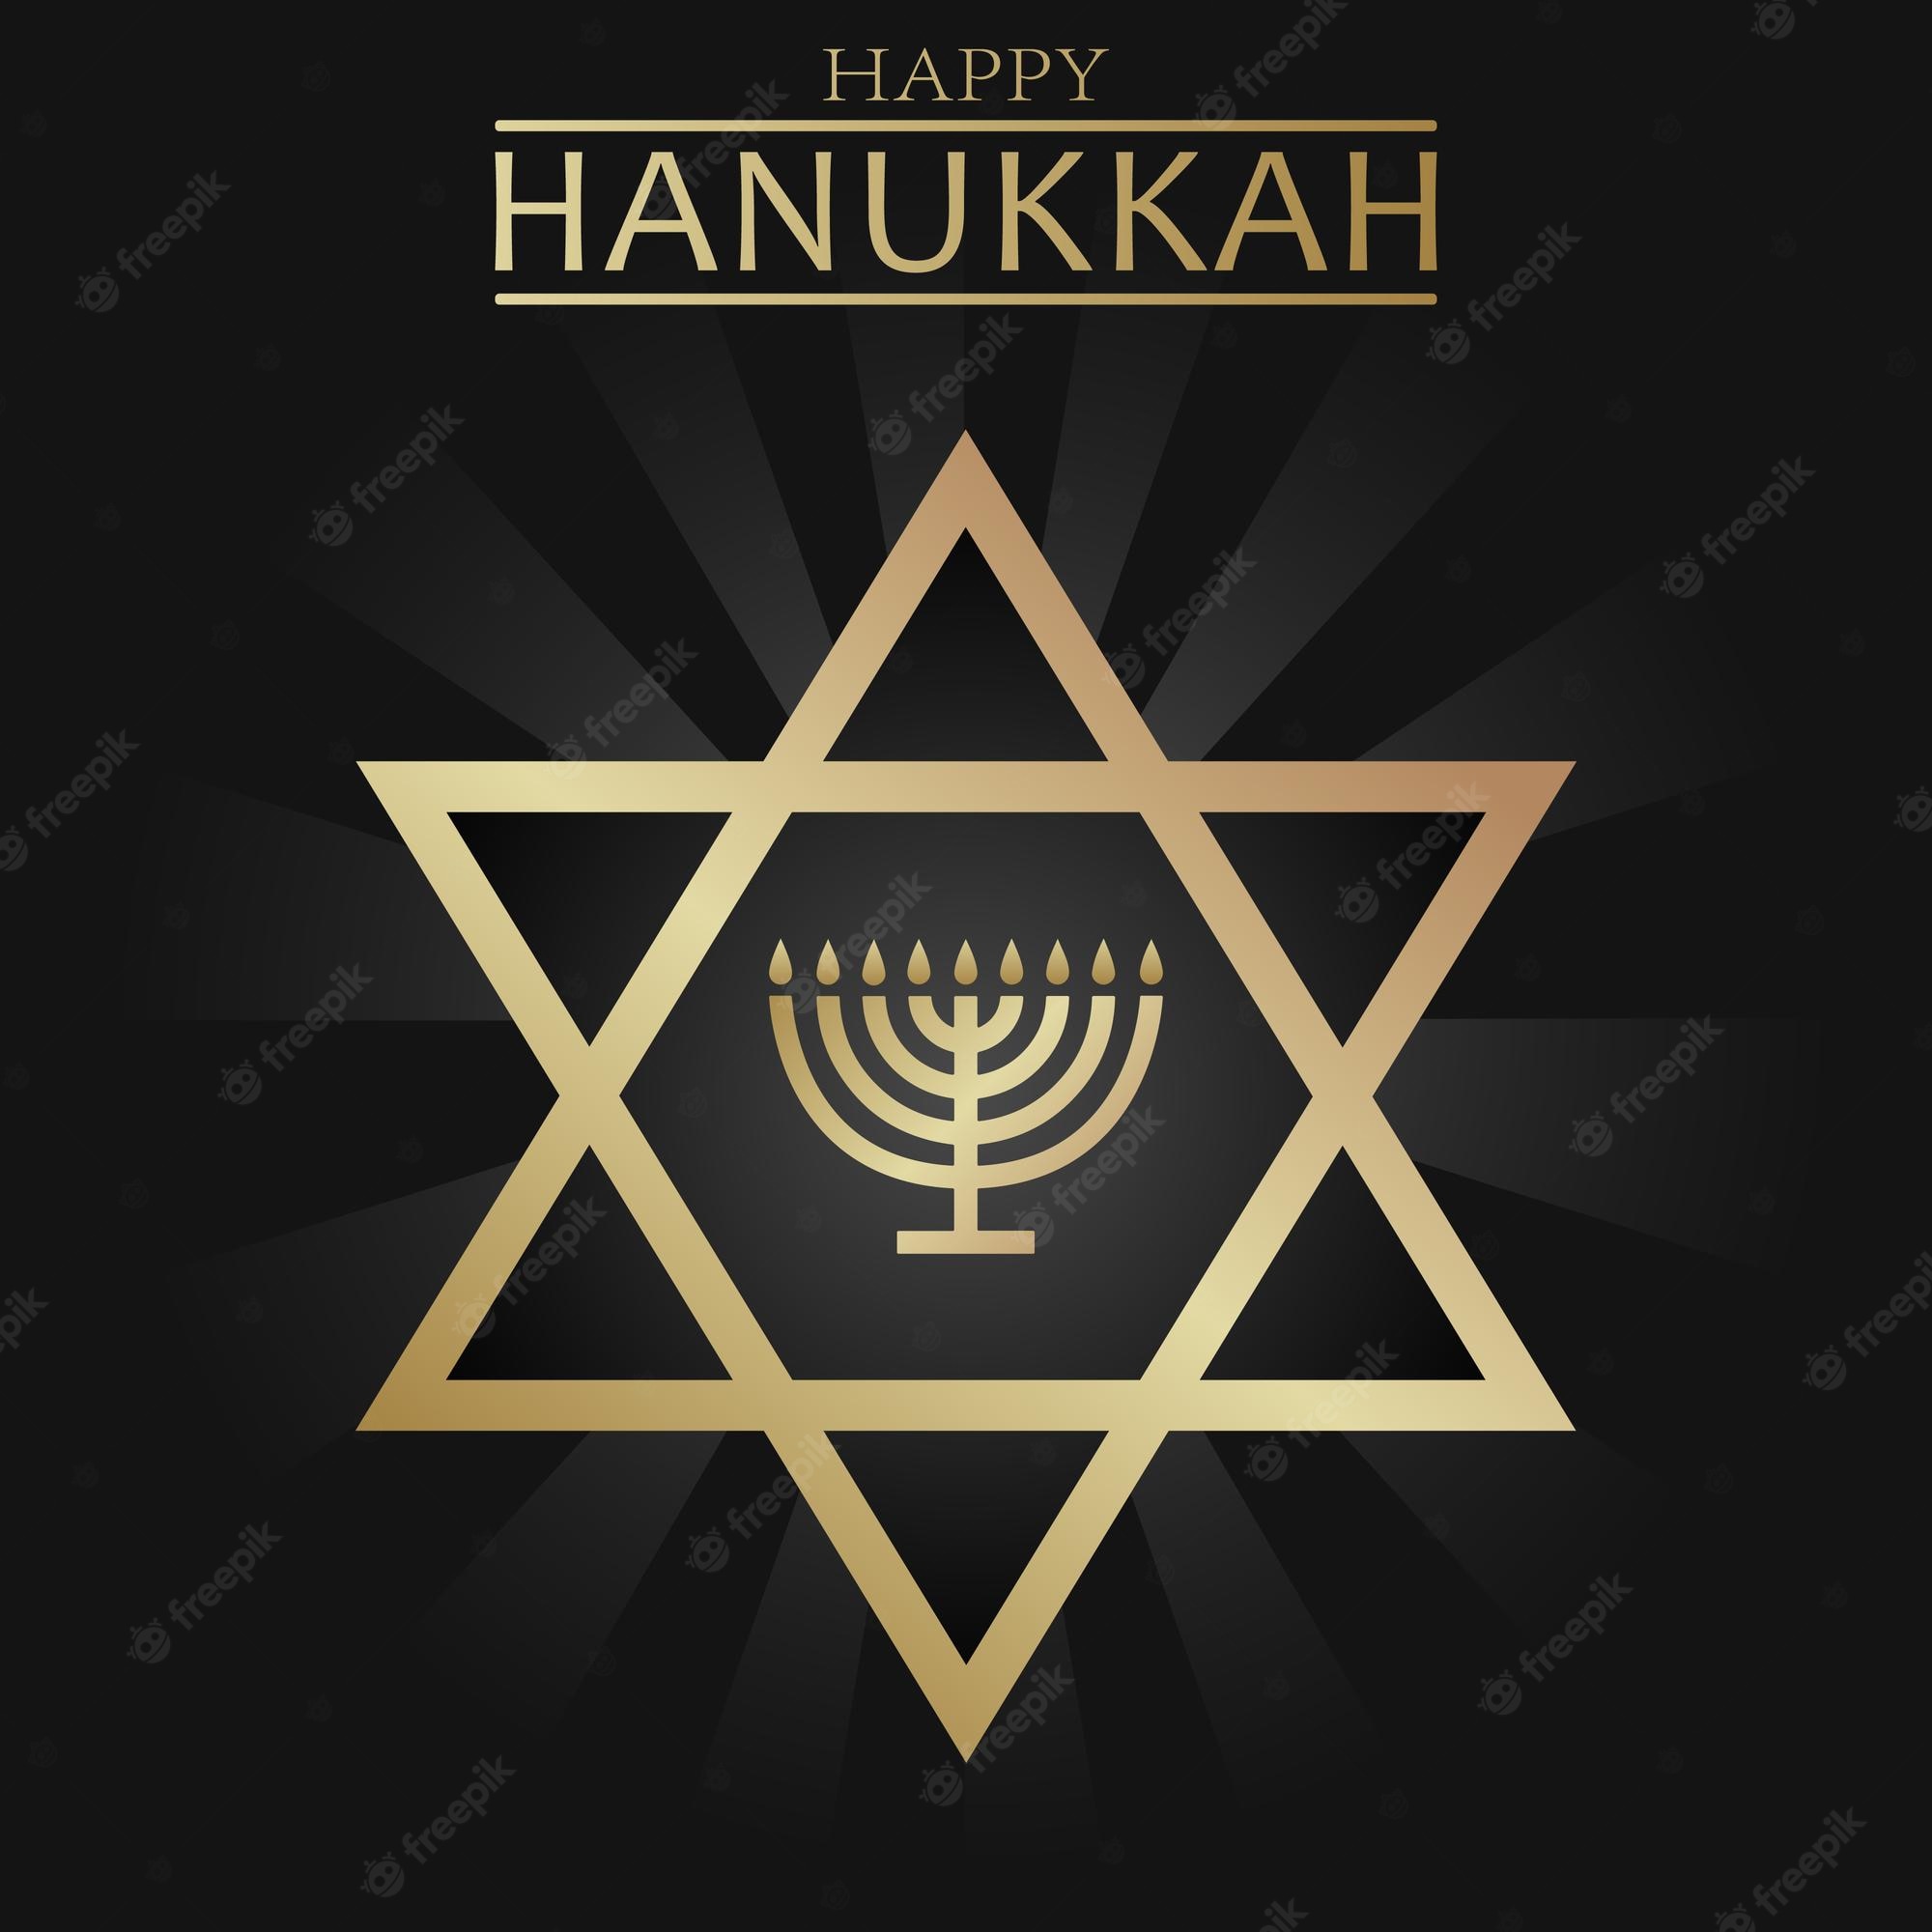 Hanukkah Wallpapers